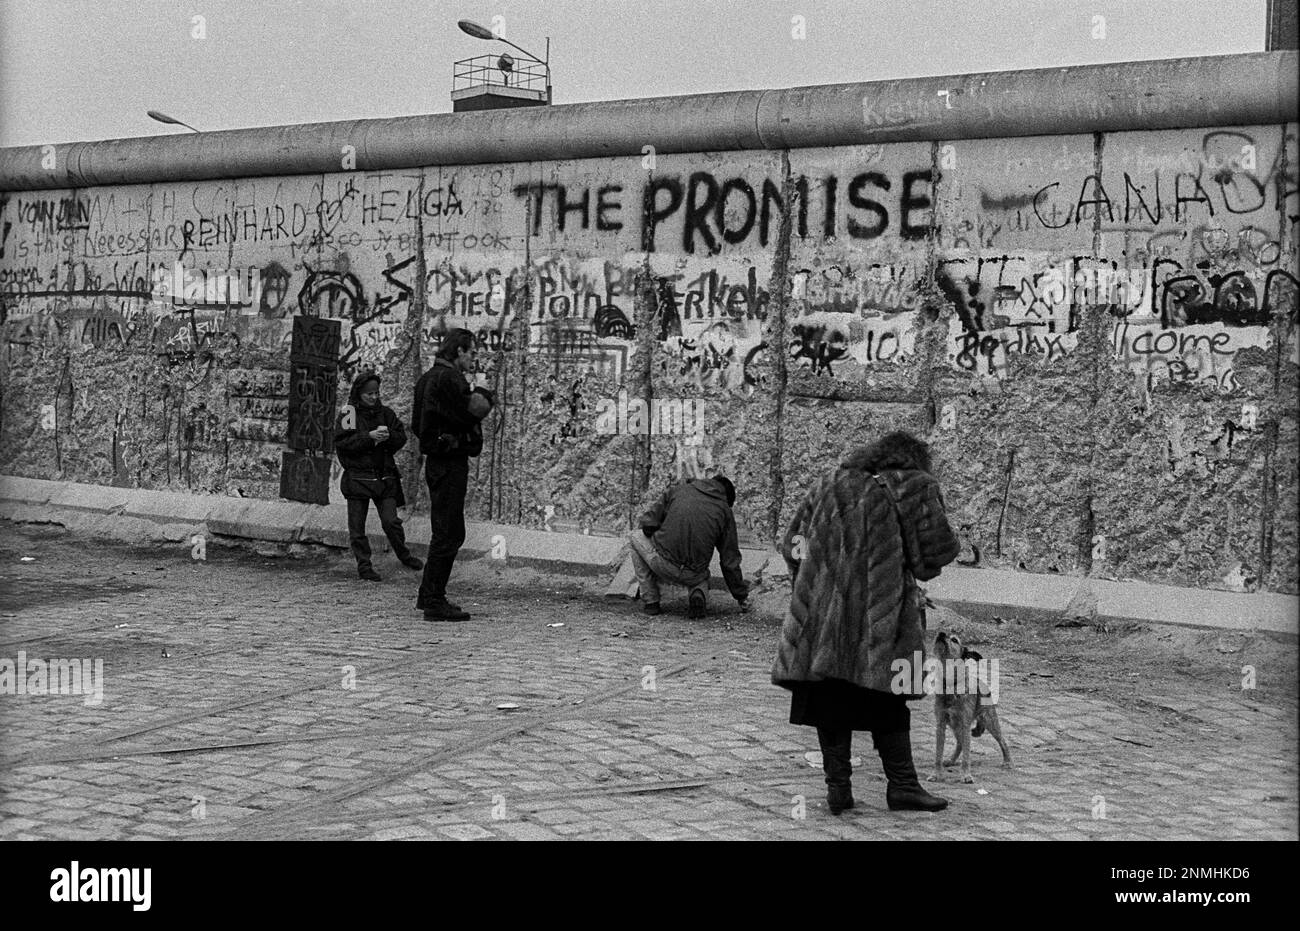 Berlino Ovest, 01.01.1990, al Muro di Potsdamer Platz, cane, torre di guardia, torre di confine, la promessa Foto Stock